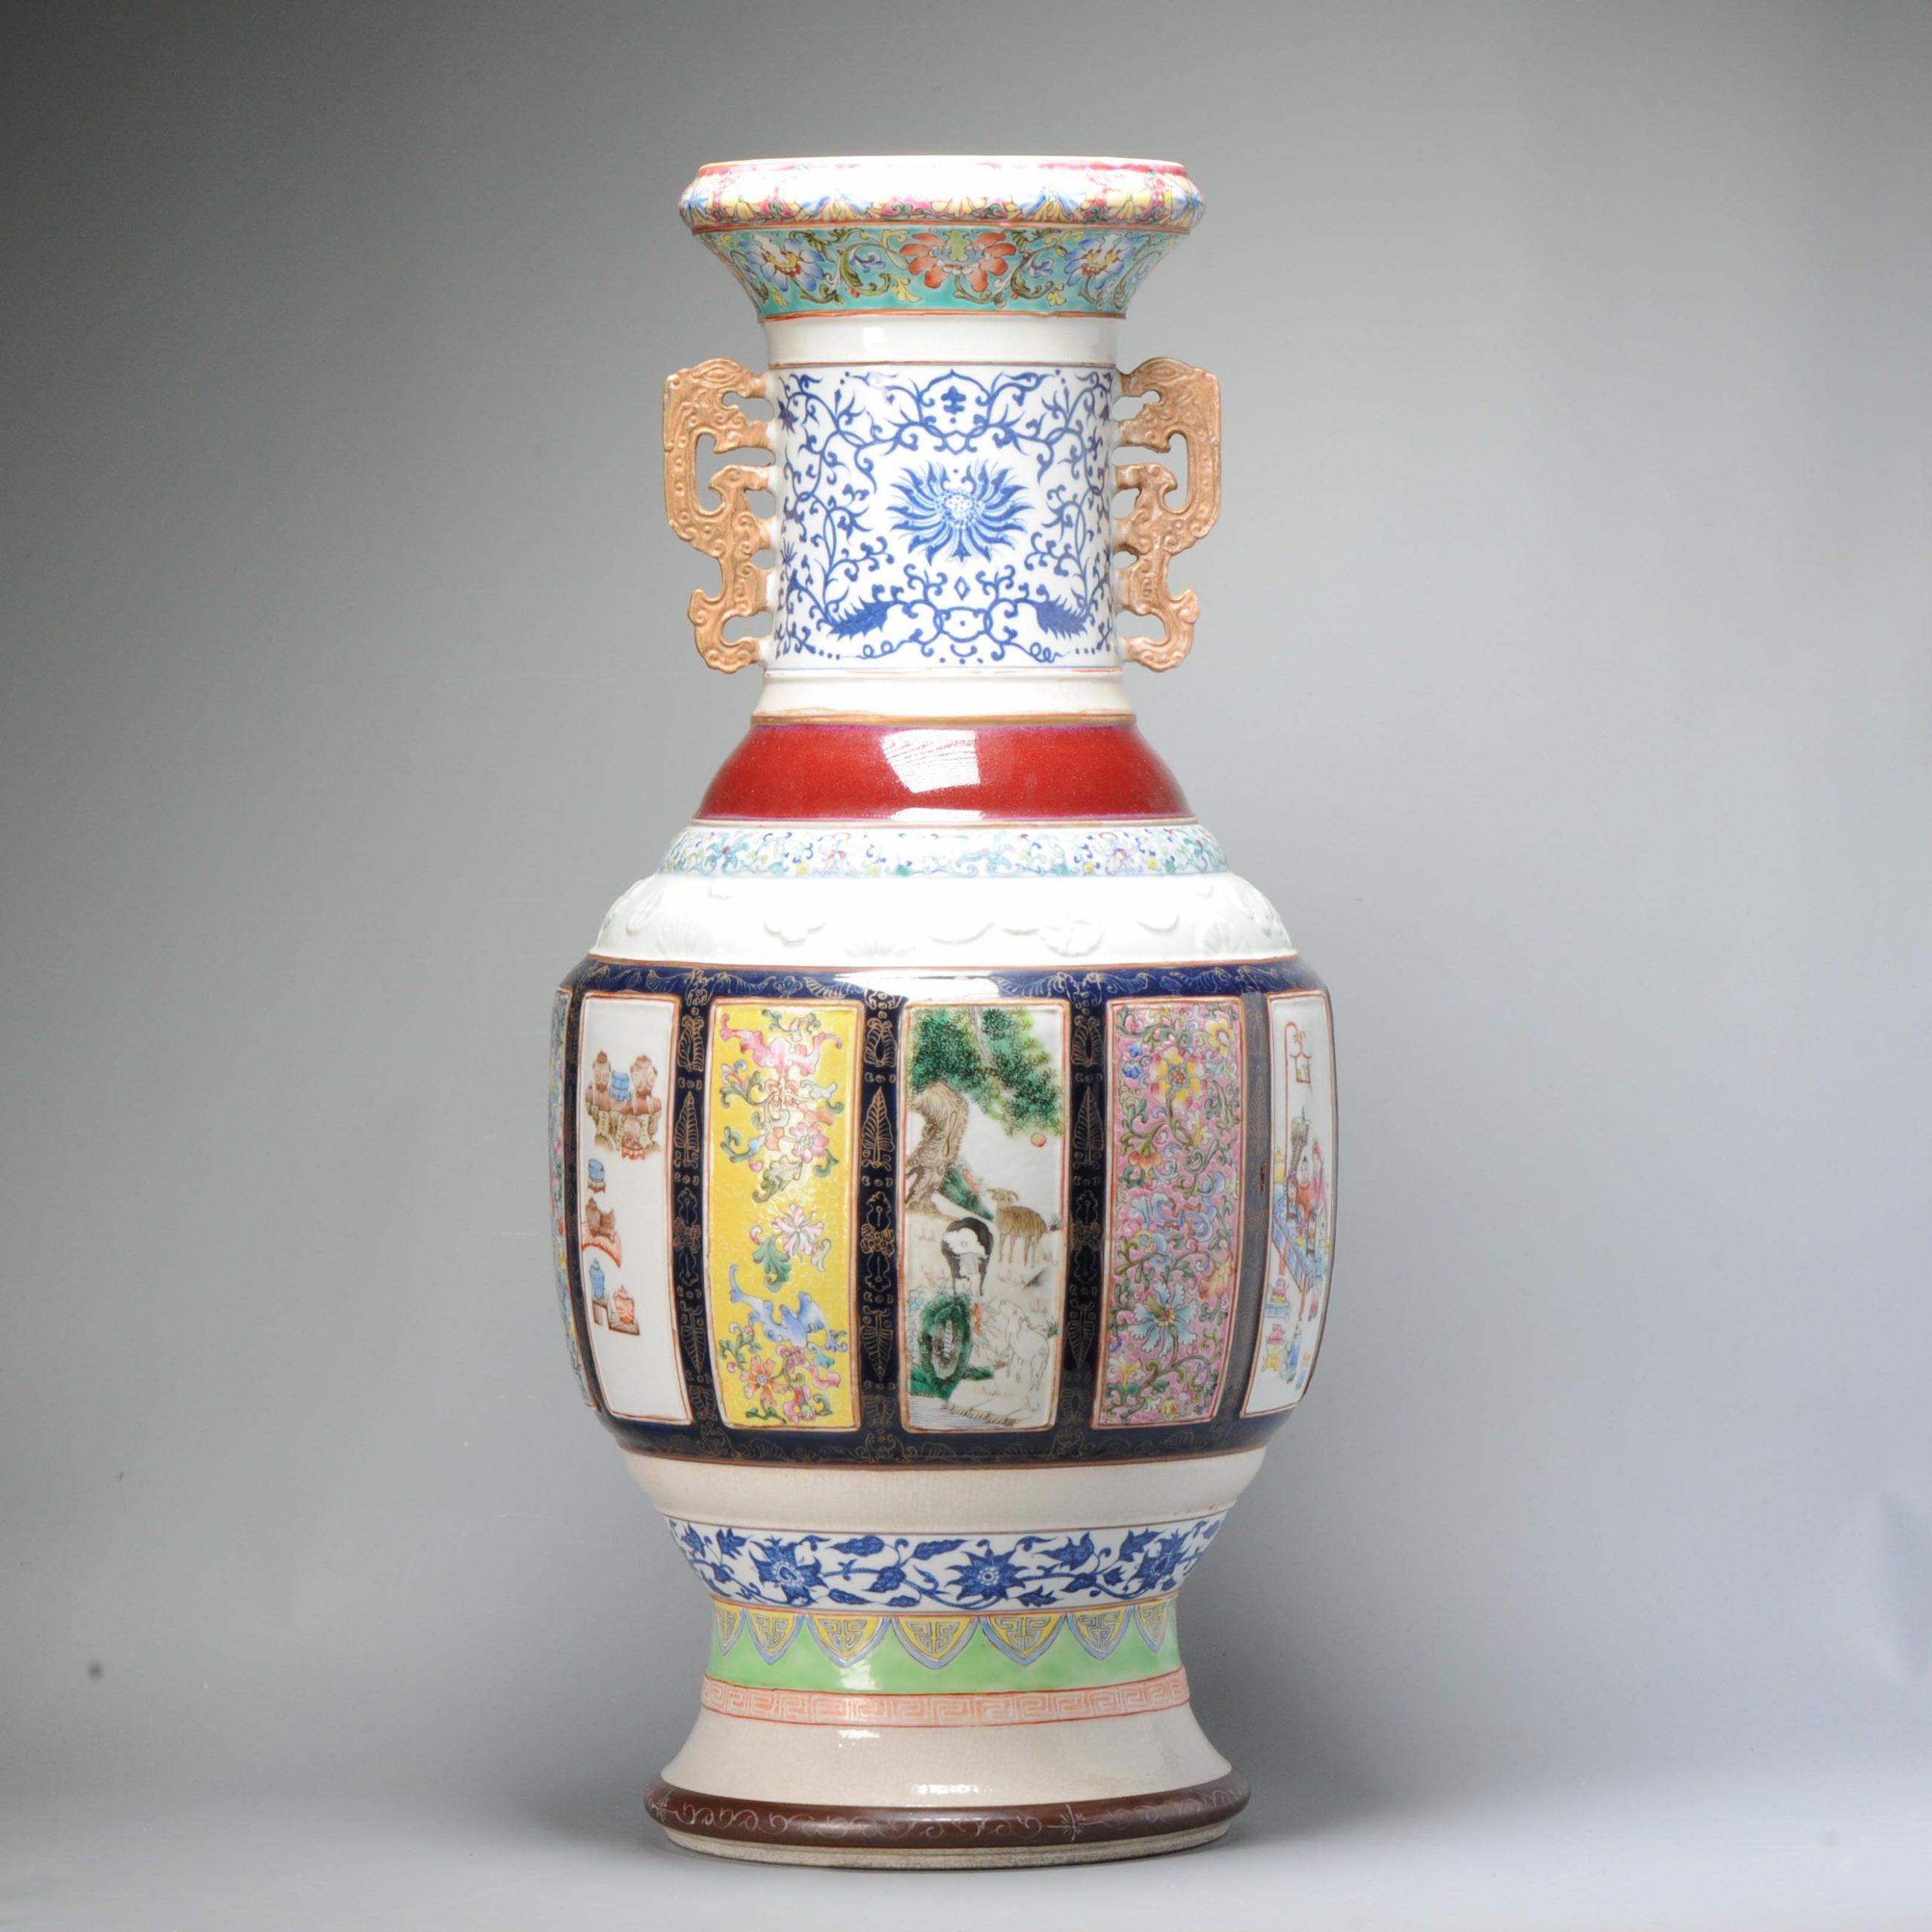 Joli vase moderne avec une scène très intéressante de fleurs, de personnages et d'éléphants.

Il n'est pas ancien, mais il est toujours très décoratif.


Condit
1 ligne stabilisée dans la base. Taille 595x290mm HauteurxDiamètre
Période
21ème